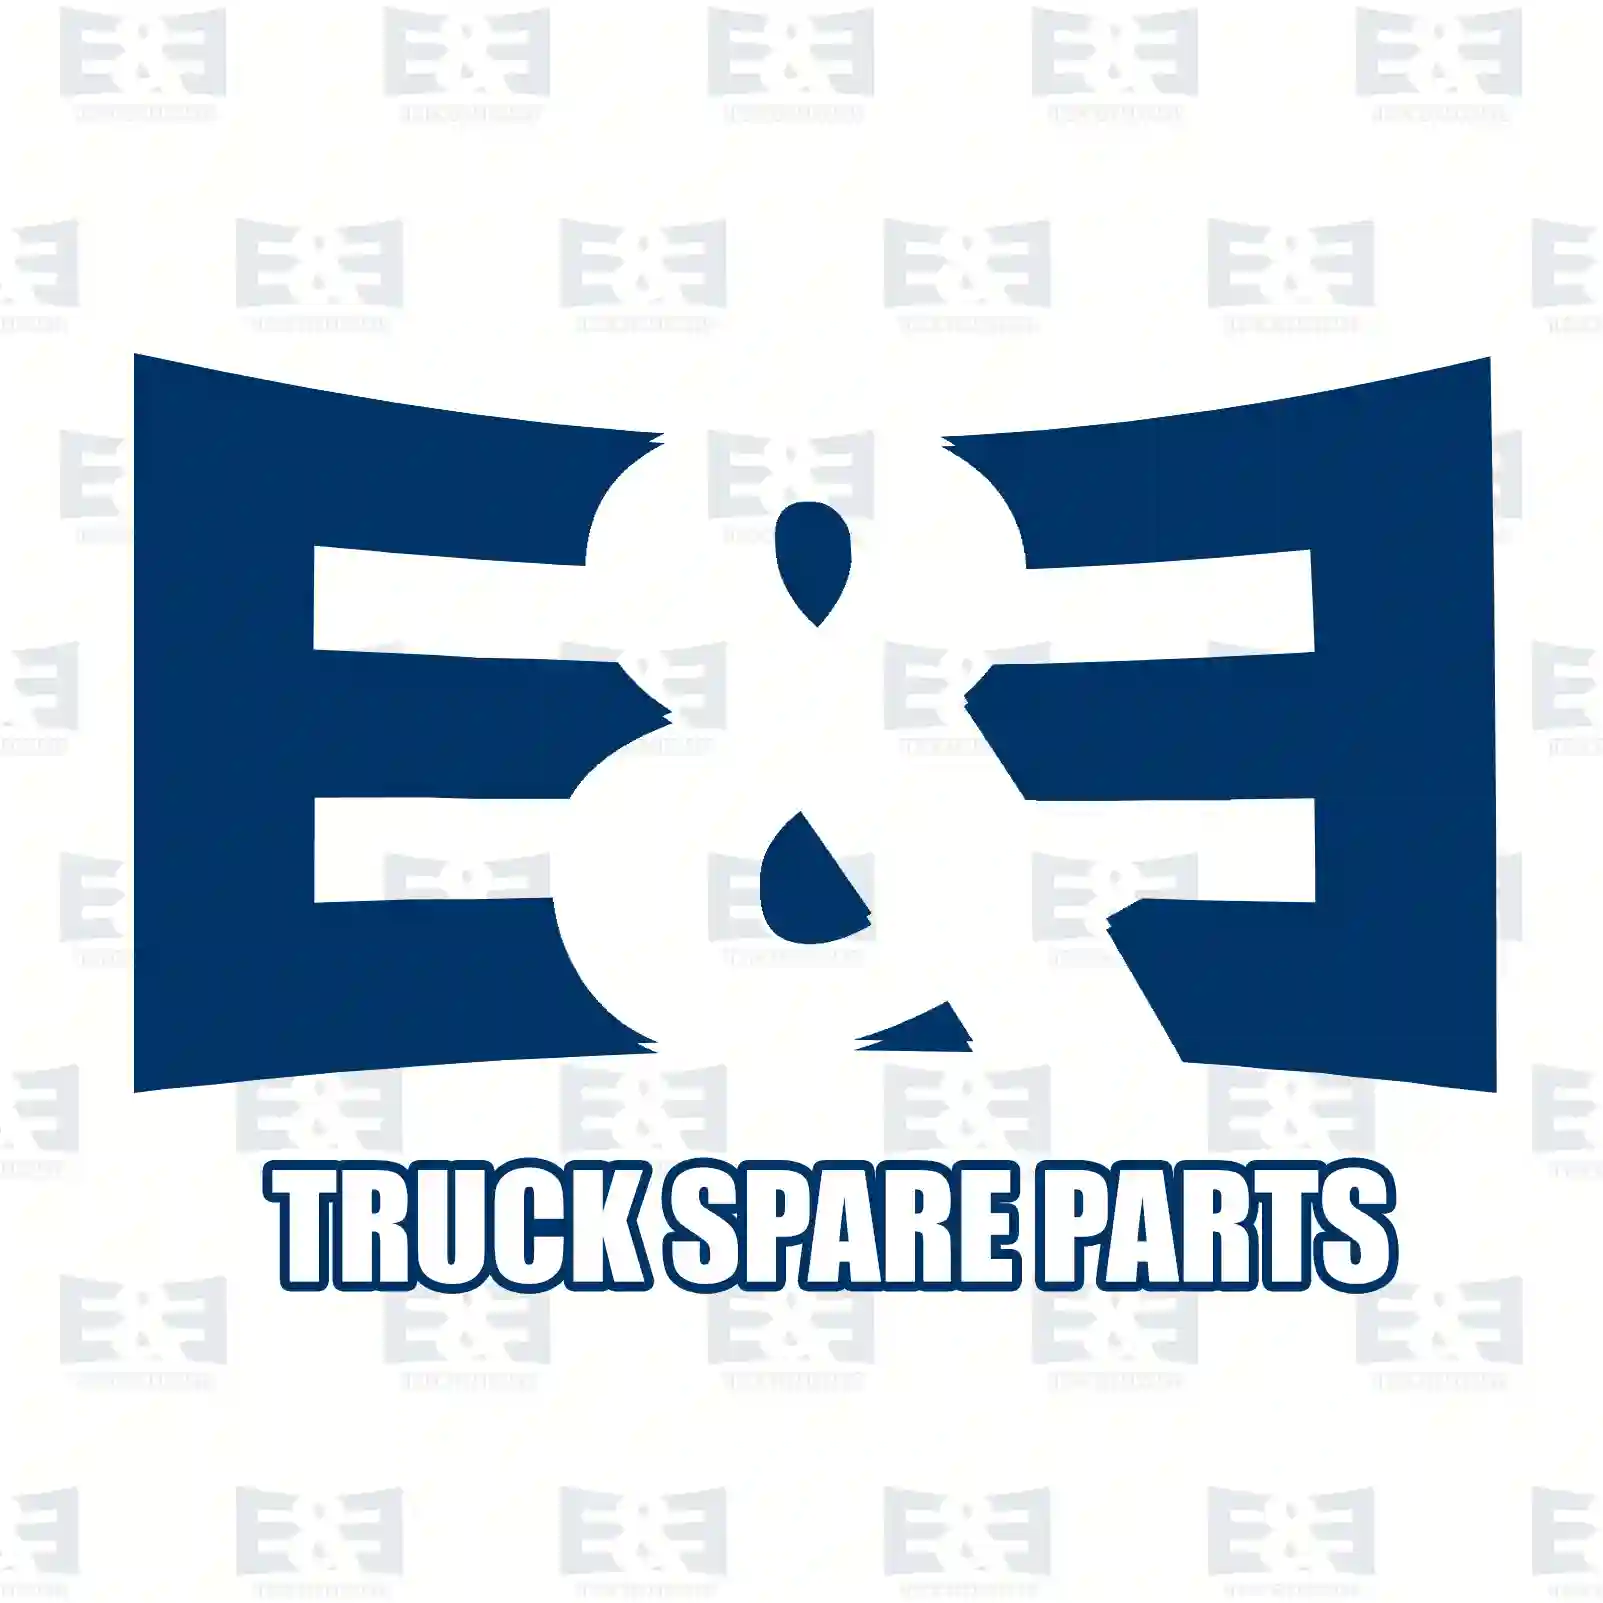 Gear shift knob, complete, 2E2277045, 4762861, 4762861 ||  2E2277045 E&E Truck Spare Parts | Truck Spare Parts, Auotomotive Spare Parts Gear shift knob, complete, 2E2277045, 4762861, 4762861 ||  2E2277045 E&E Truck Spare Parts | Truck Spare Parts, Auotomotive Spare Parts